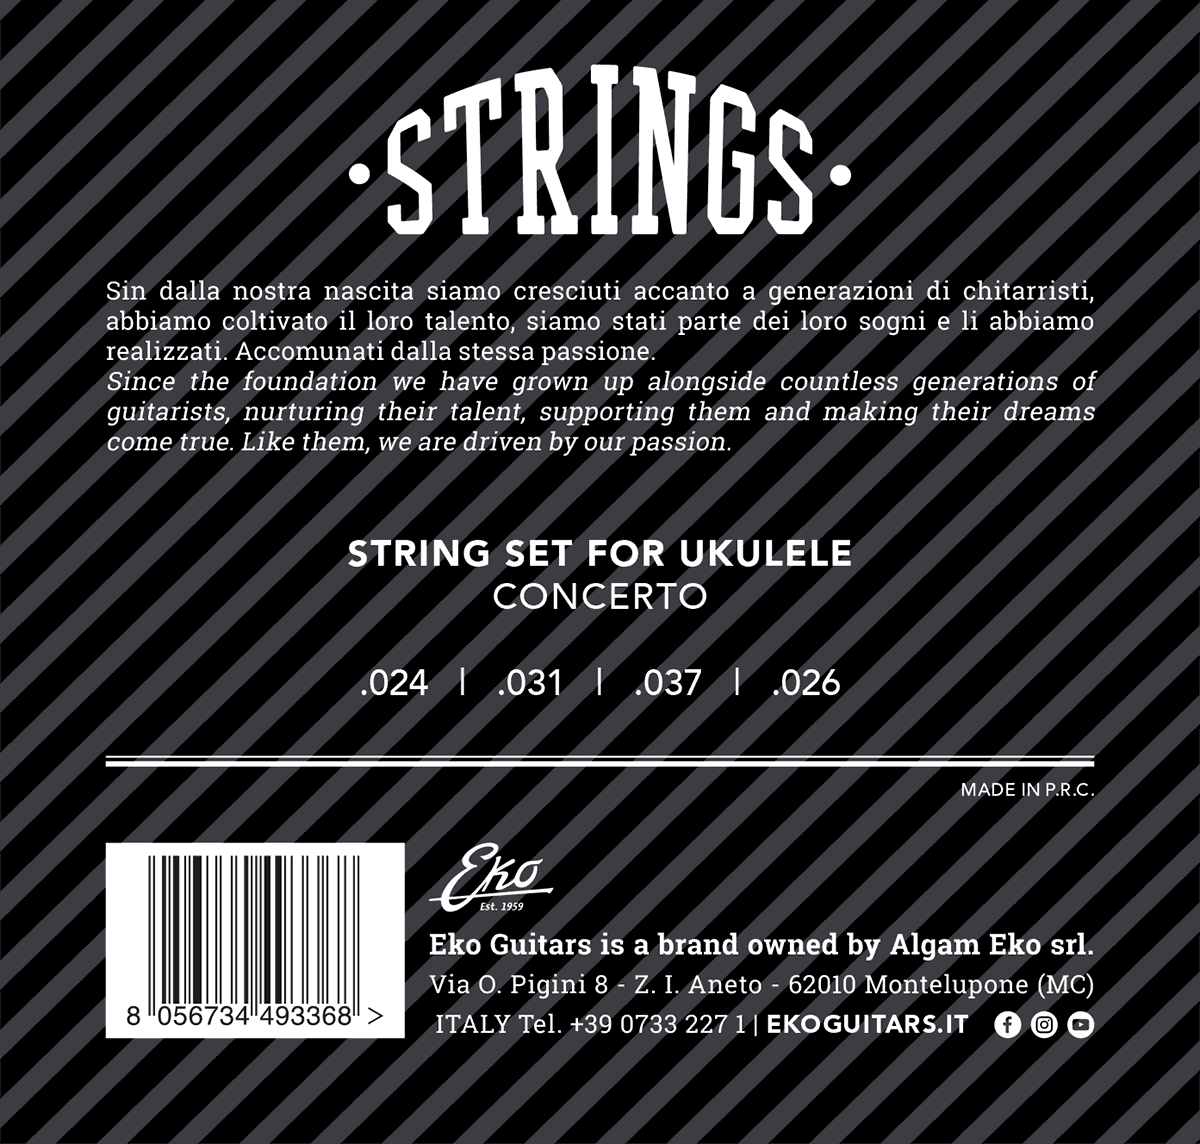 Concerto Ukulele strings set - Medium